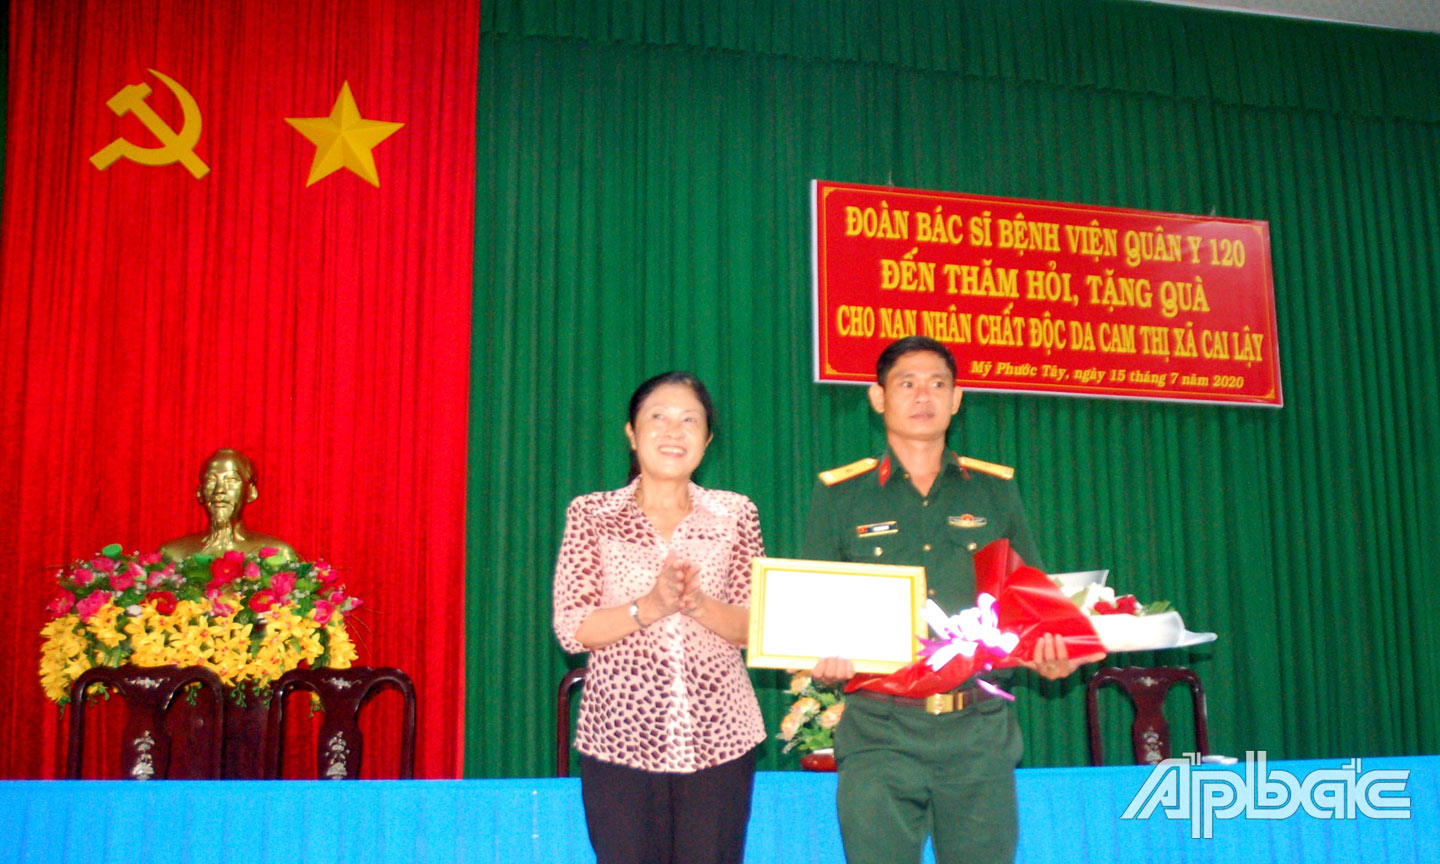 Chủ tịch Hội NNCĐDC tỉnh Dương Thị Lệ trao Thư cảm ơn cho đại diện Đoàn y, bác sĩ  Bệnh viện Quân y 120 đến thăm, khám bệnh vàtặng quà cho NNCĐDC TX. Cai Lậy.